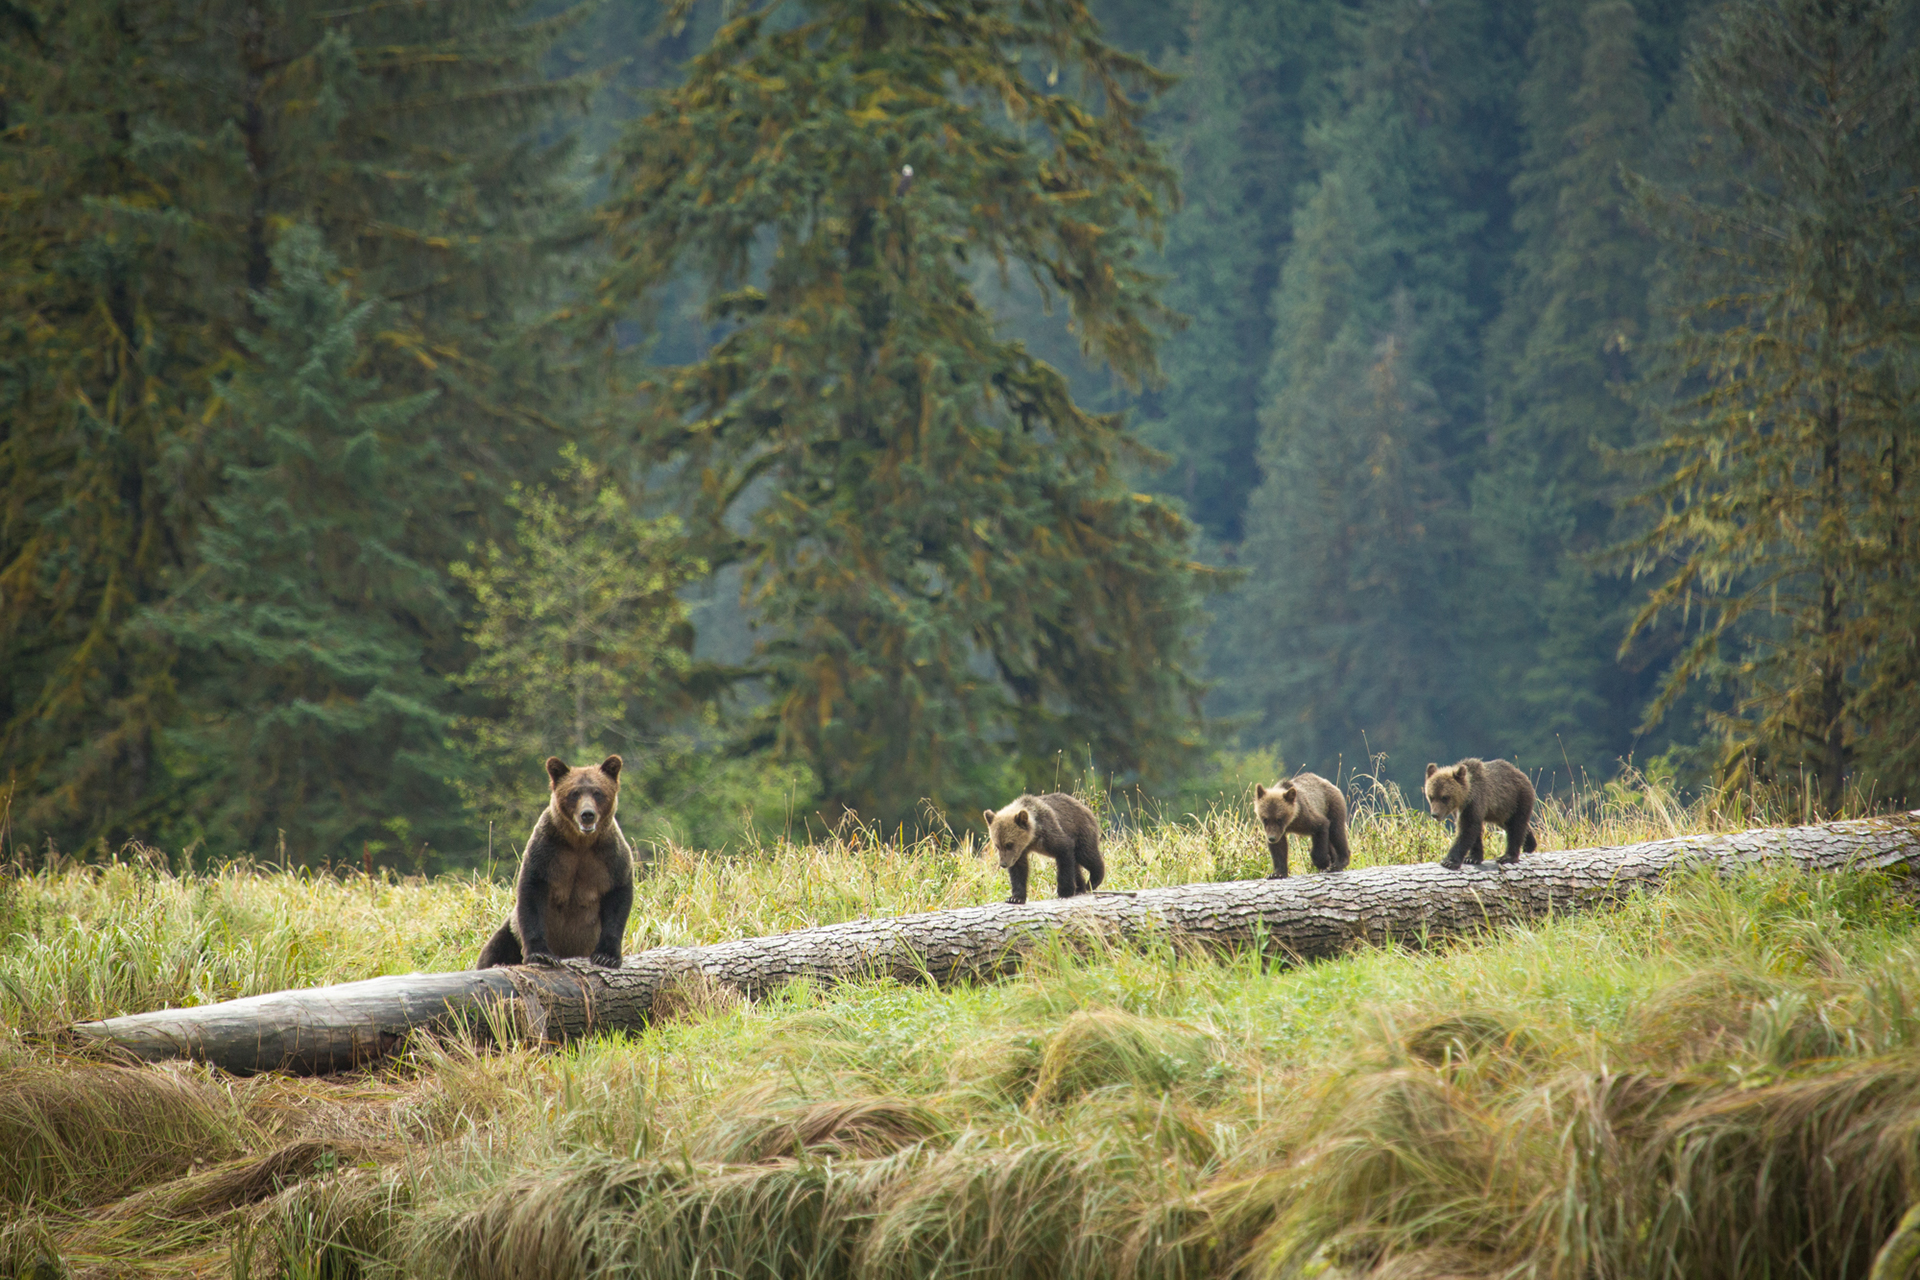 great bear rainforest tourism